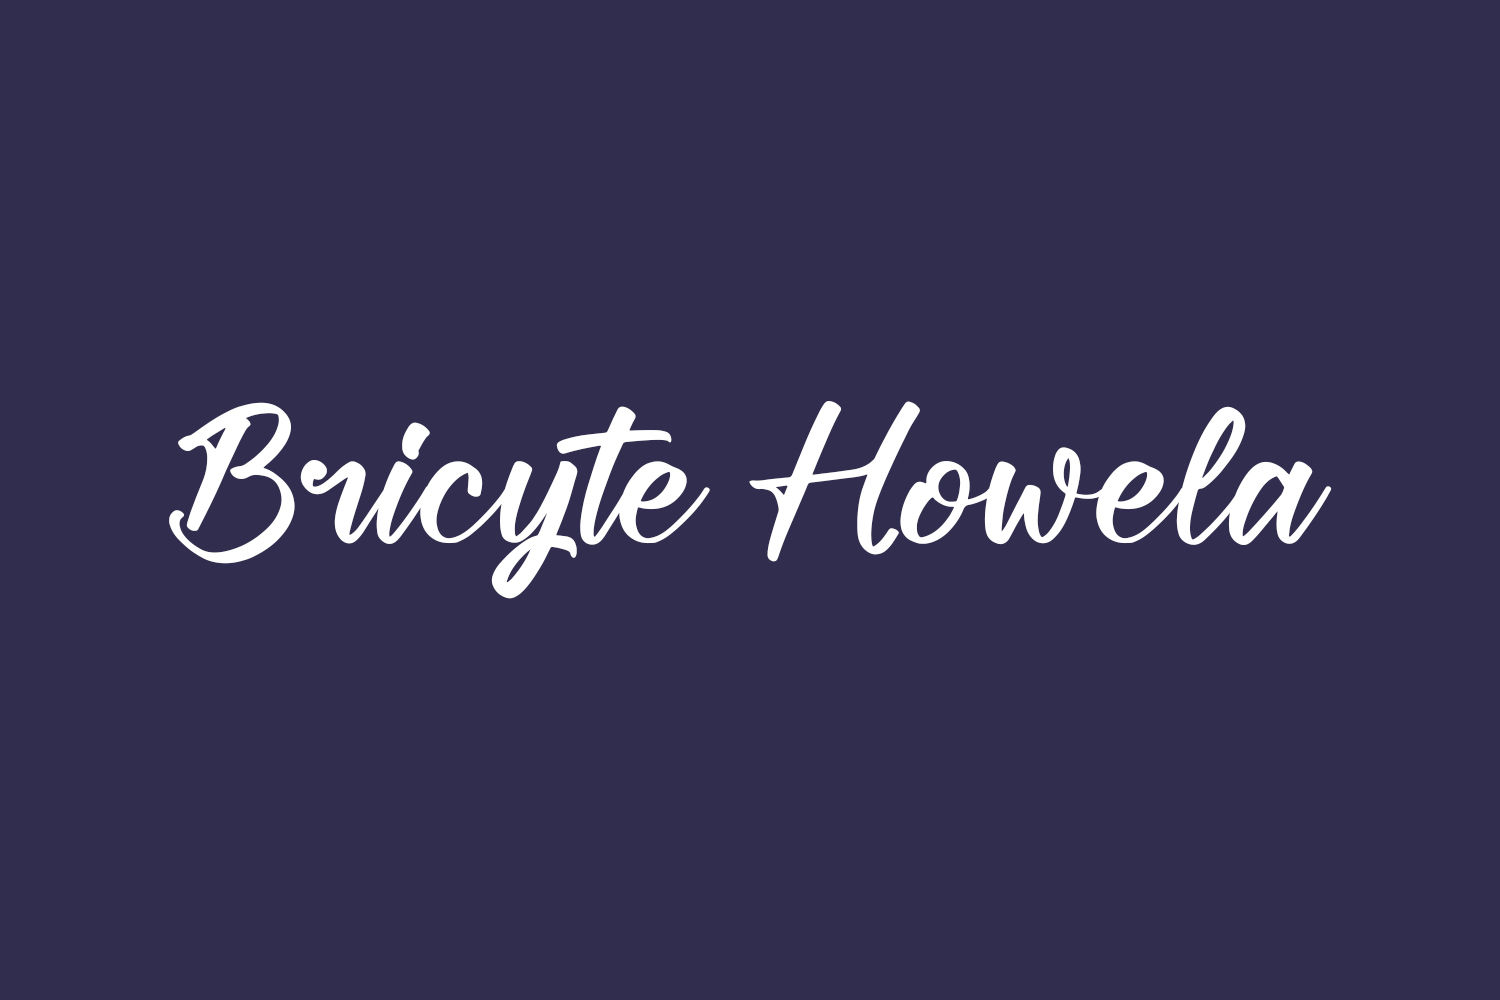 Bricyte Howela Free Font